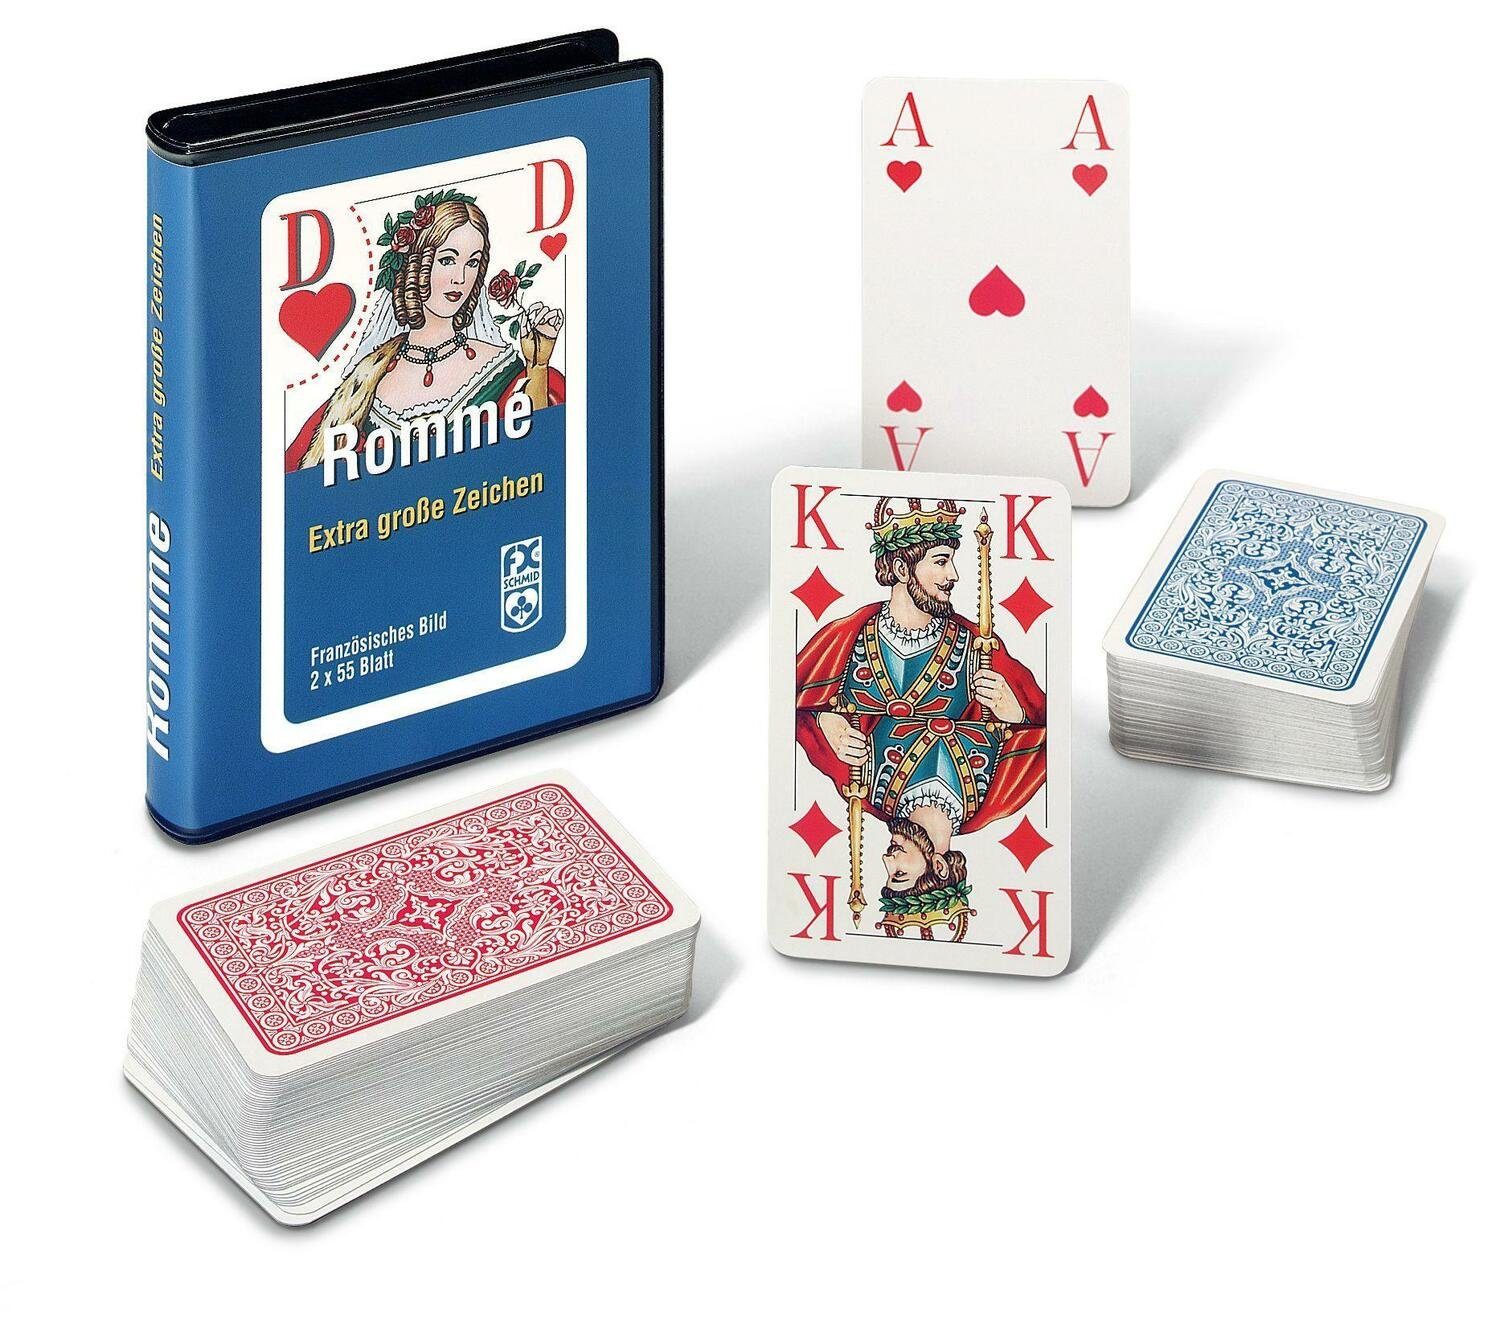 Ravensburger Spiel, Rommé, Canasta, Bridge. Mit extragroßen Eckzeichen | Kartenspiele